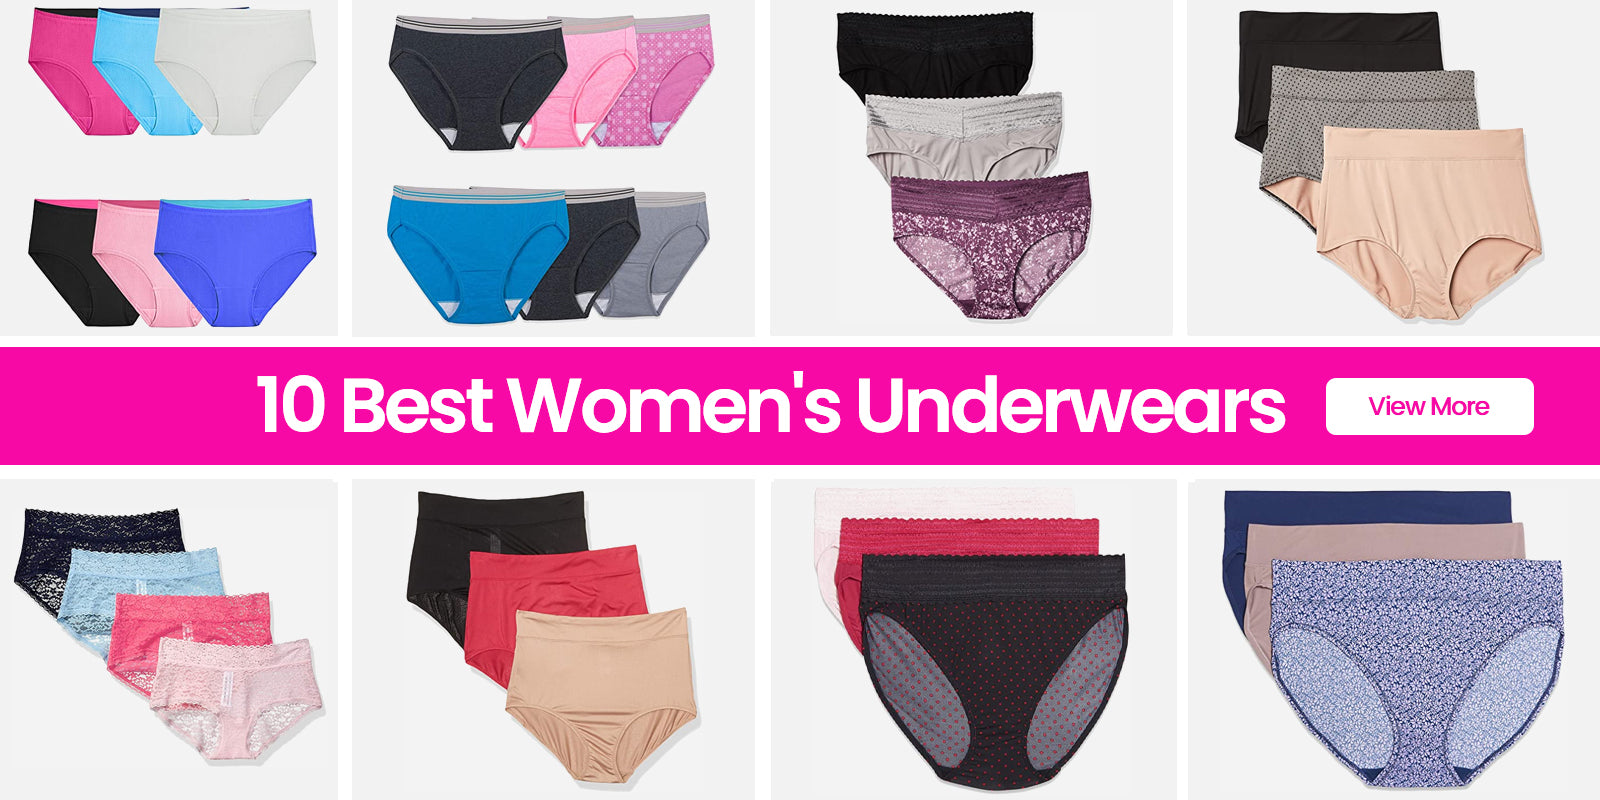 Hanes Women's Comfort, Period Underwear 1 Pair Briefs Size 10 WARM